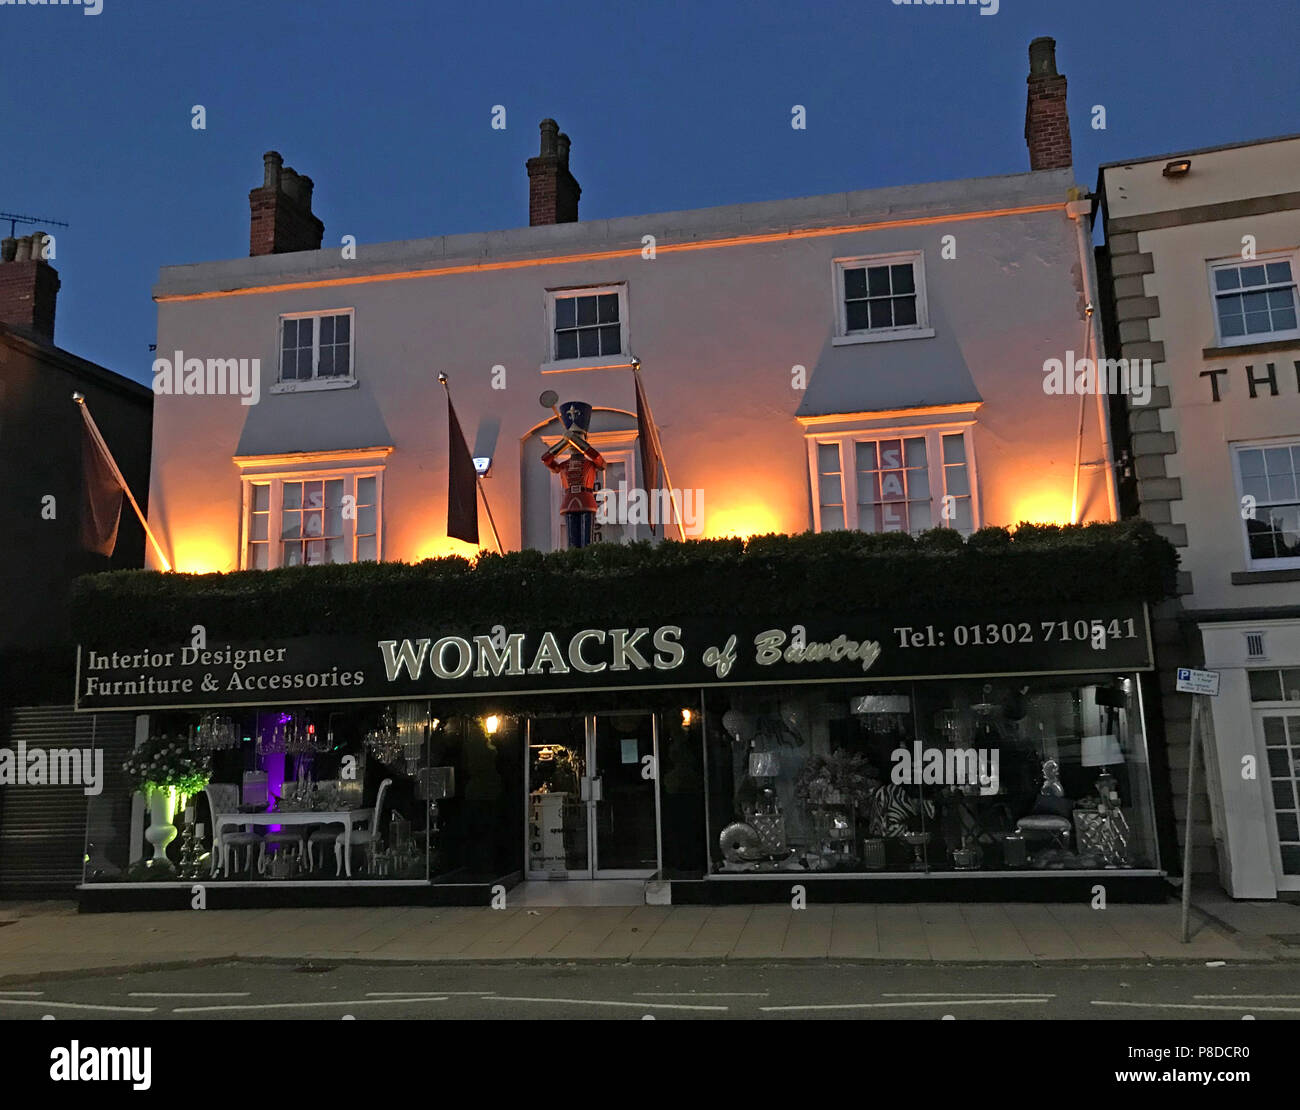 Womacks de Bawtry au crépuscule, 16-18 High Street, Retford, Doncaster, South Yorkshire, Angleterre, Royaume-Uni, DN10 3BA Banque D'Images